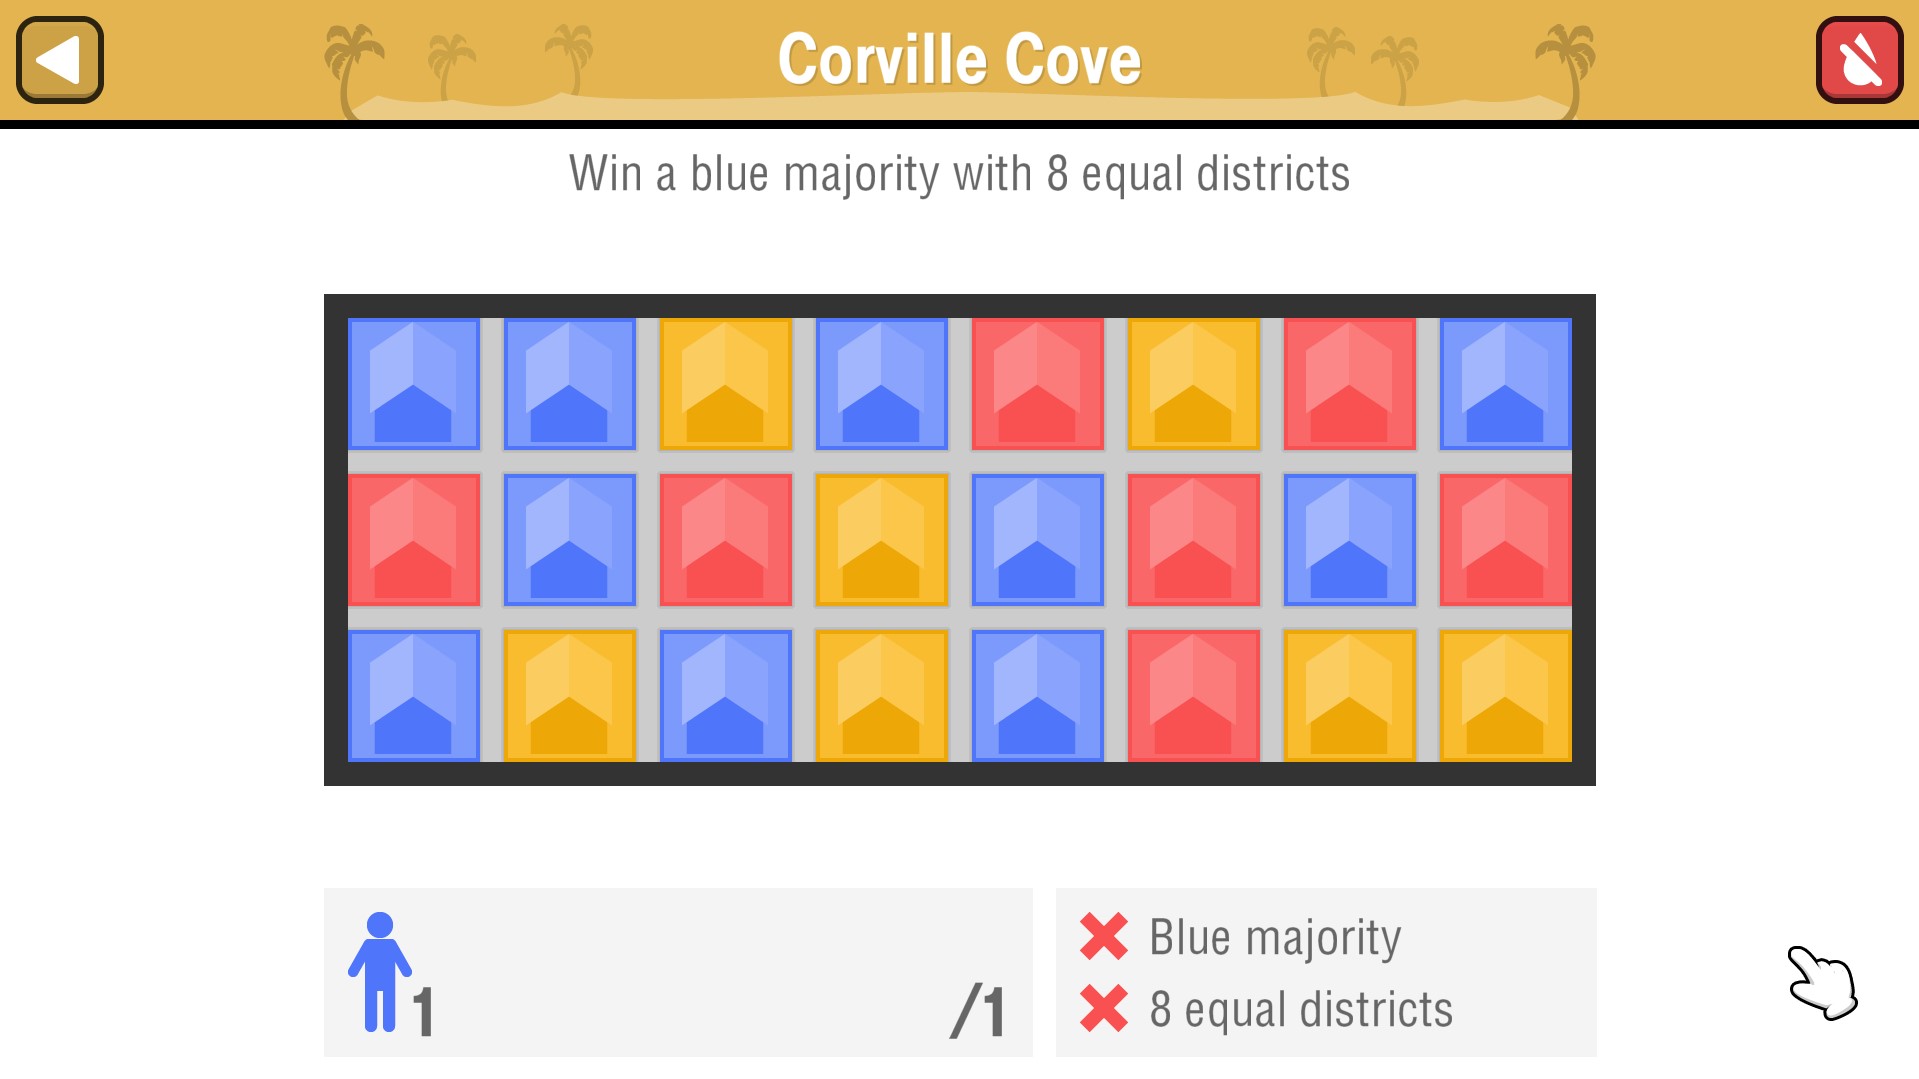 Corville Cove